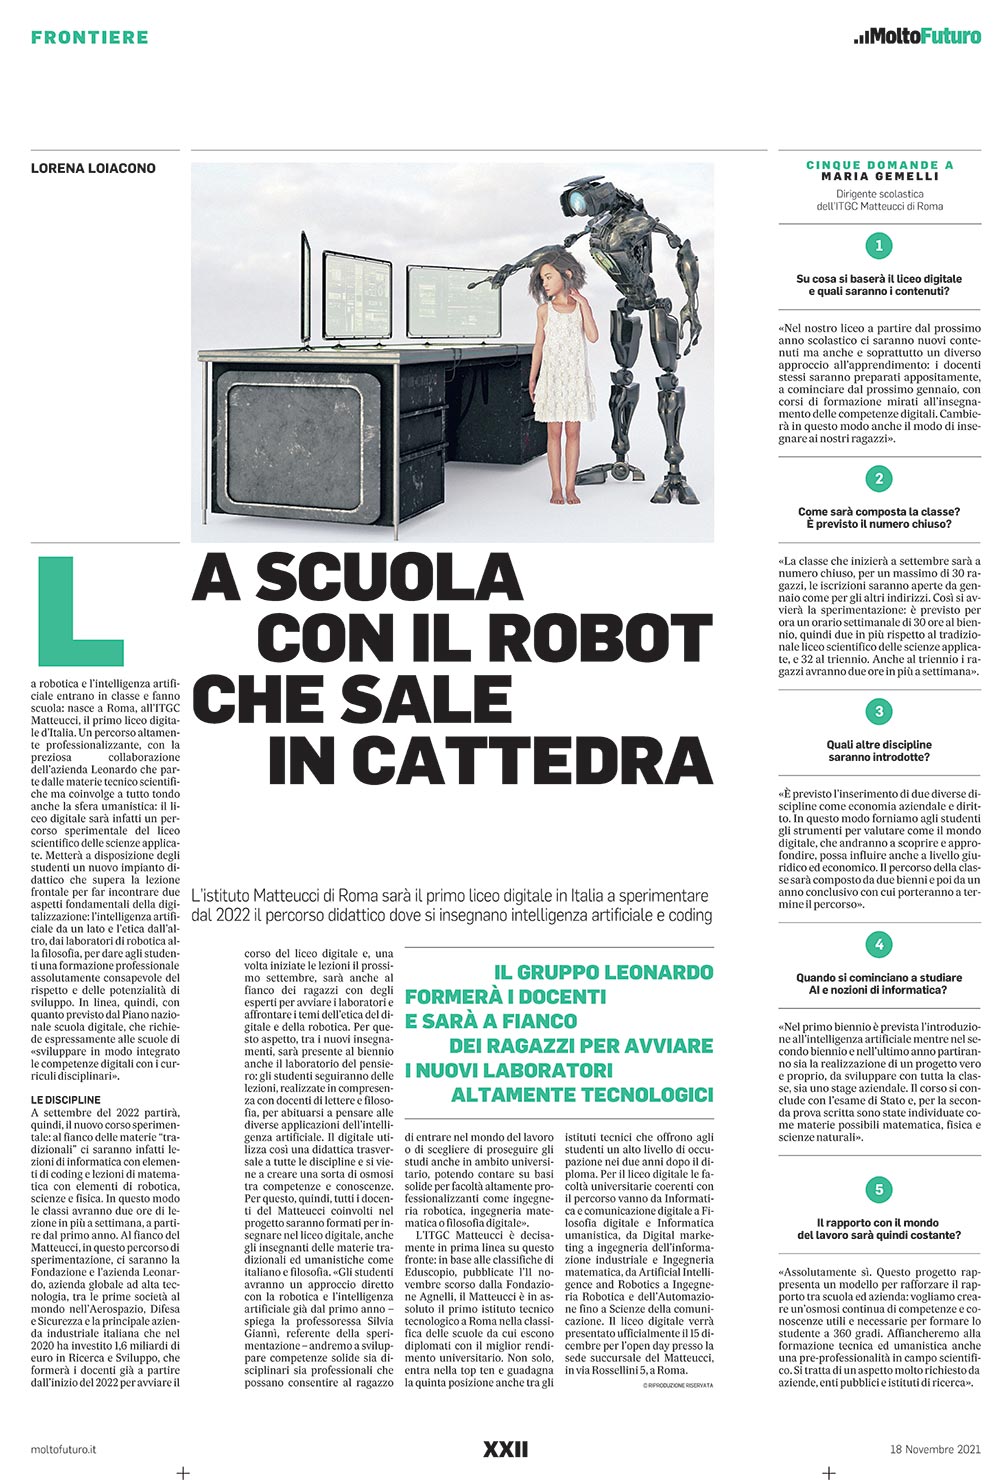 Molto Futuro - A scuola con il robot che sale in cattedra